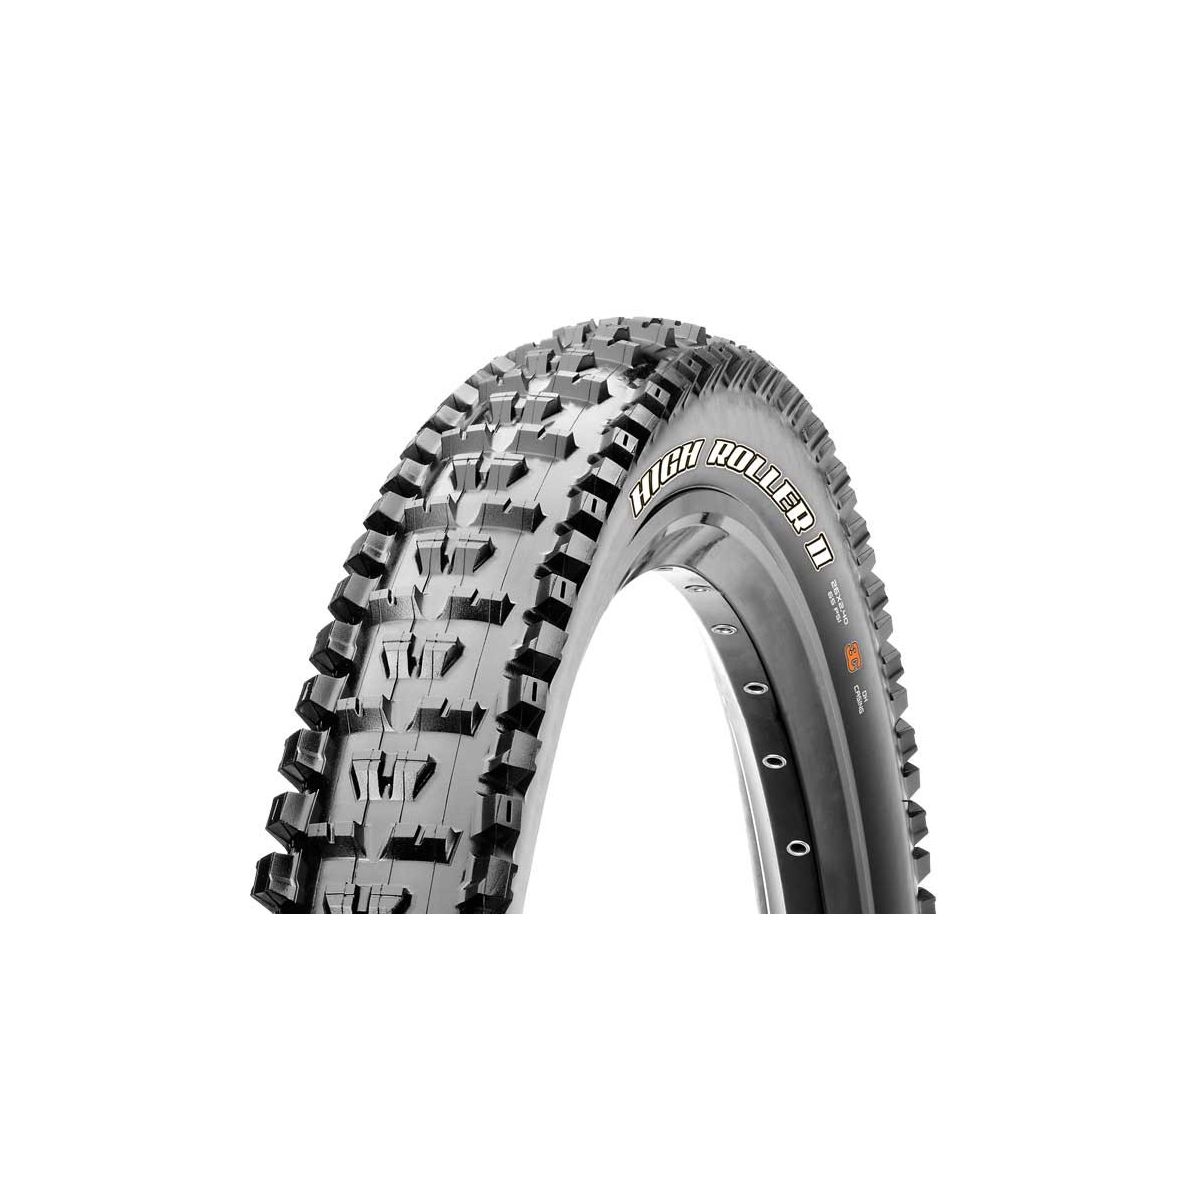 Maxxis High Roller 2 plegable EXO Tubeless ready 27.5x2.40 loe mejores neumáticos para bici de enduro